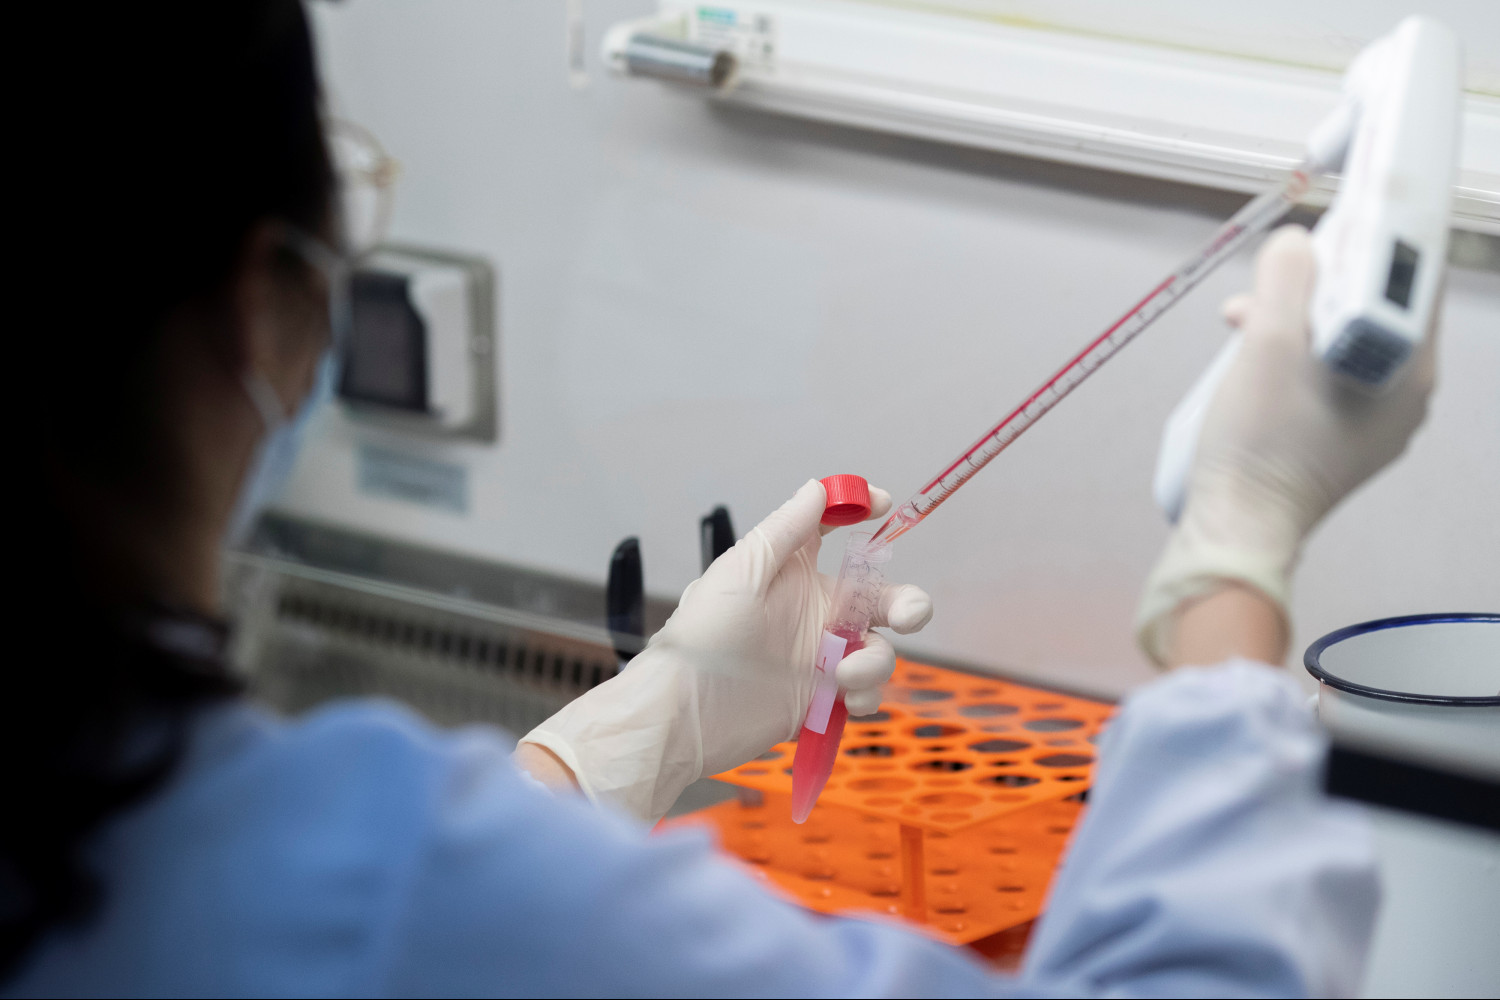 coronavirus des chercheurs chinois ont identifie des anticorps prometteurs 